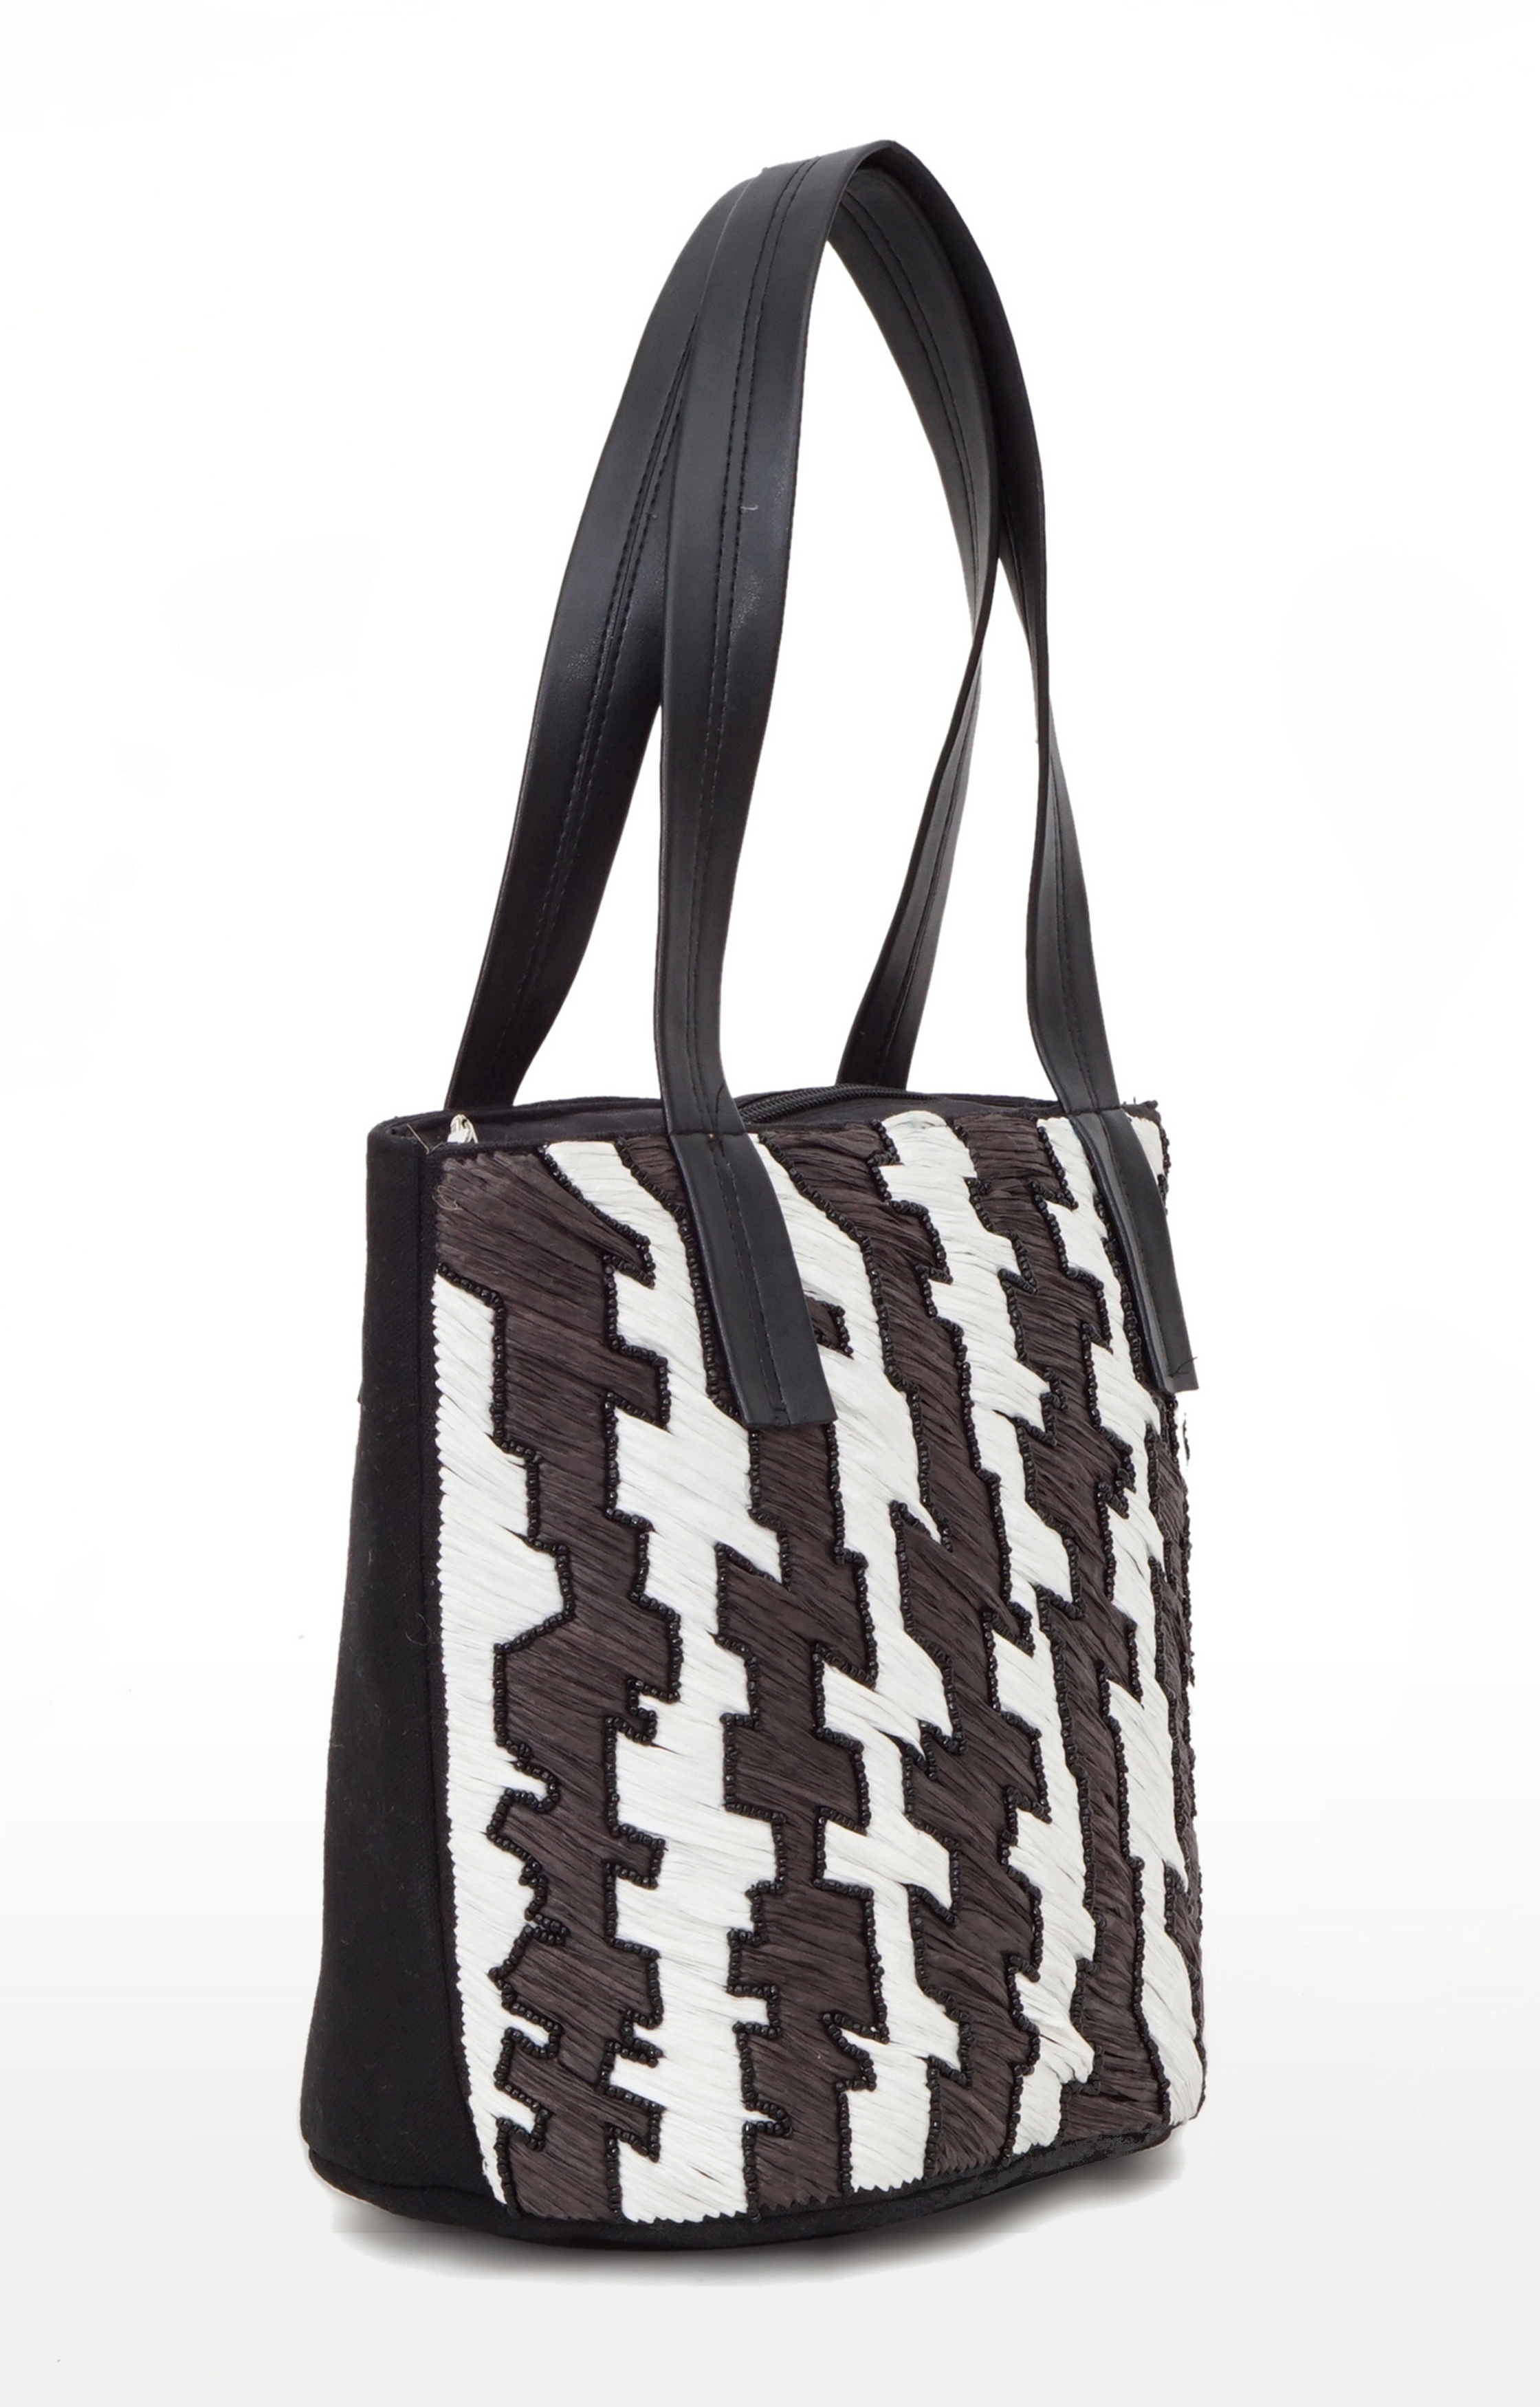 DIWAAH | Diwaah Multi Embellished Handbags 2